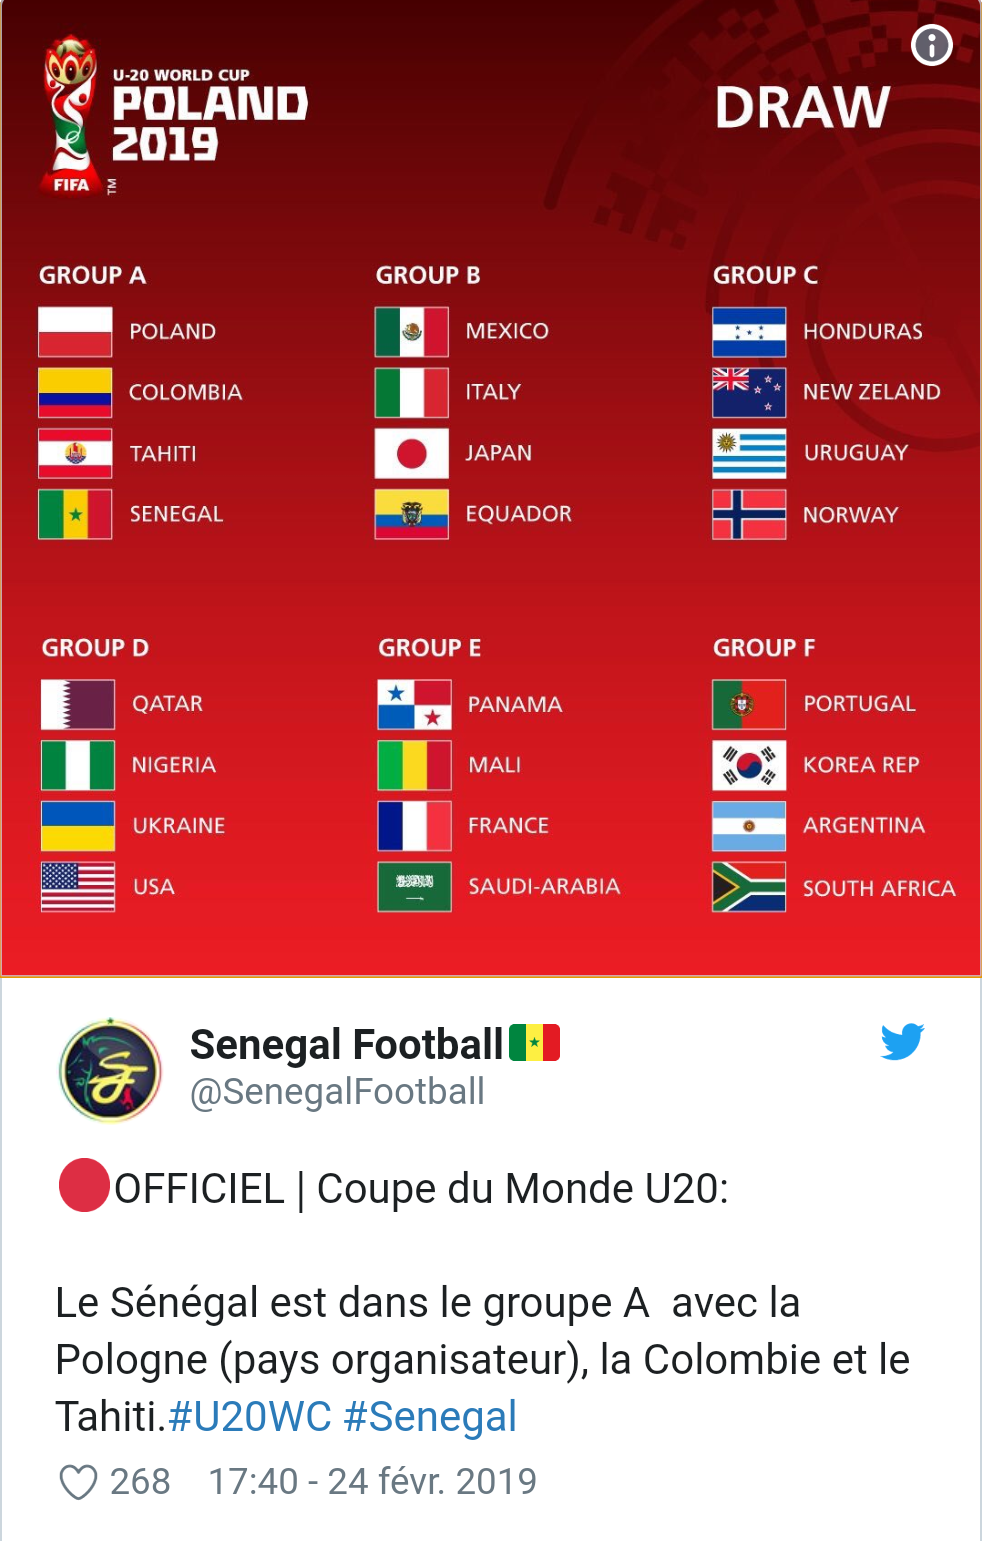 Coupe du Monde U20 : Le Sénégal dans le groupe du pays hôte, la Pologne